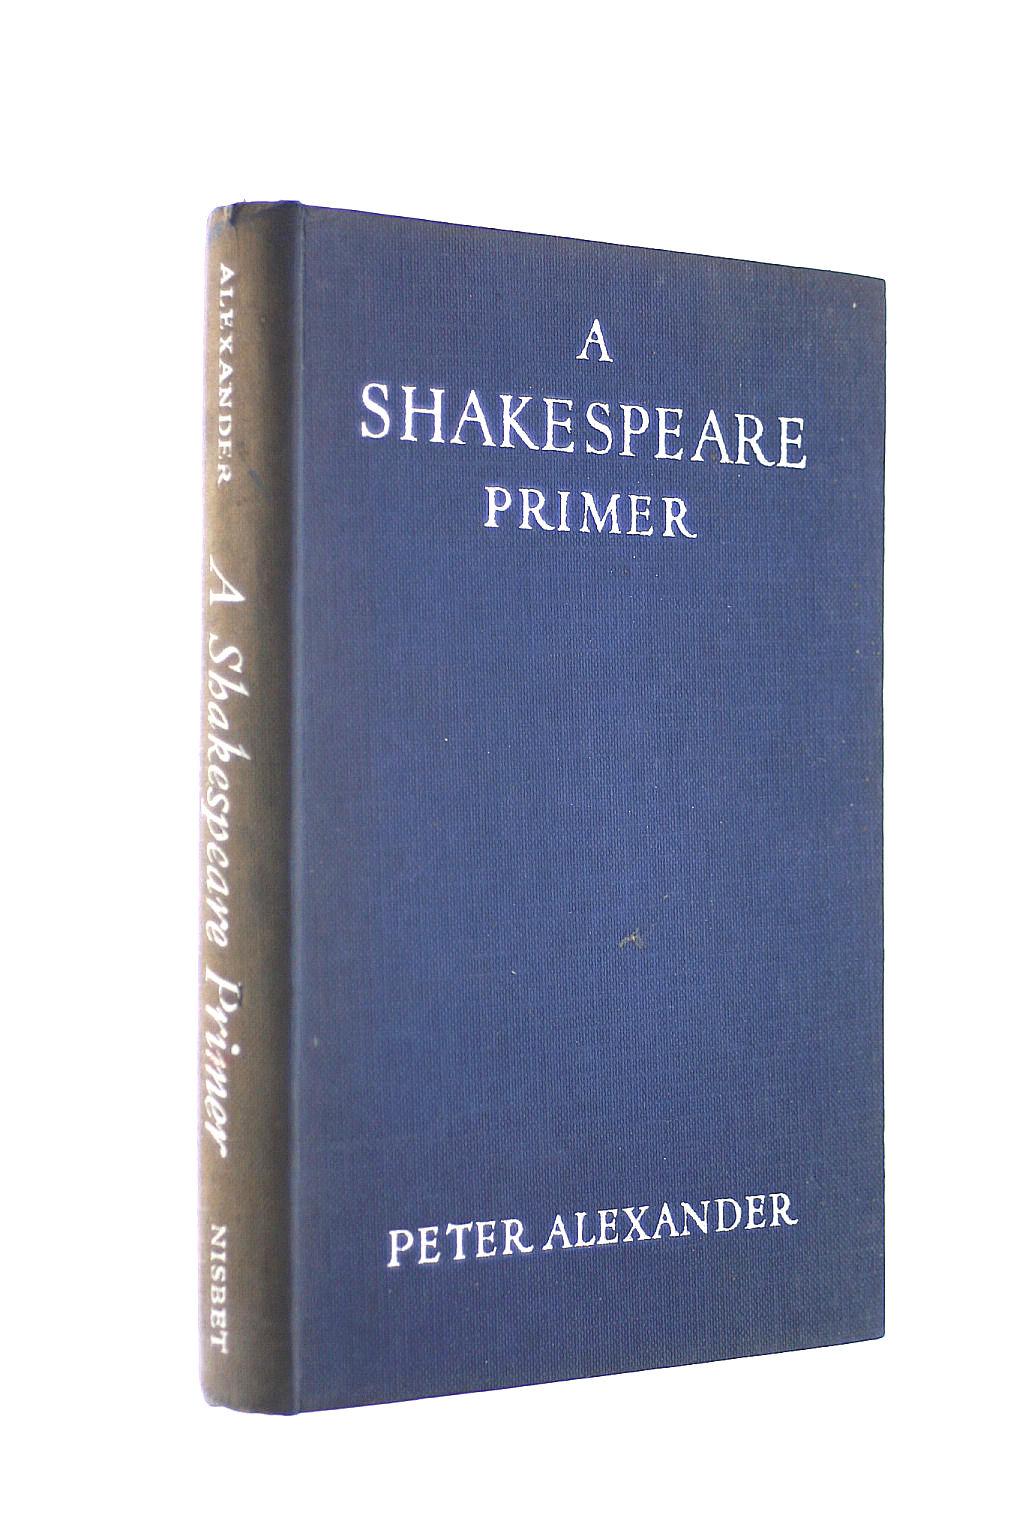 ALEXANDER, PETER - Shakespeare Primer